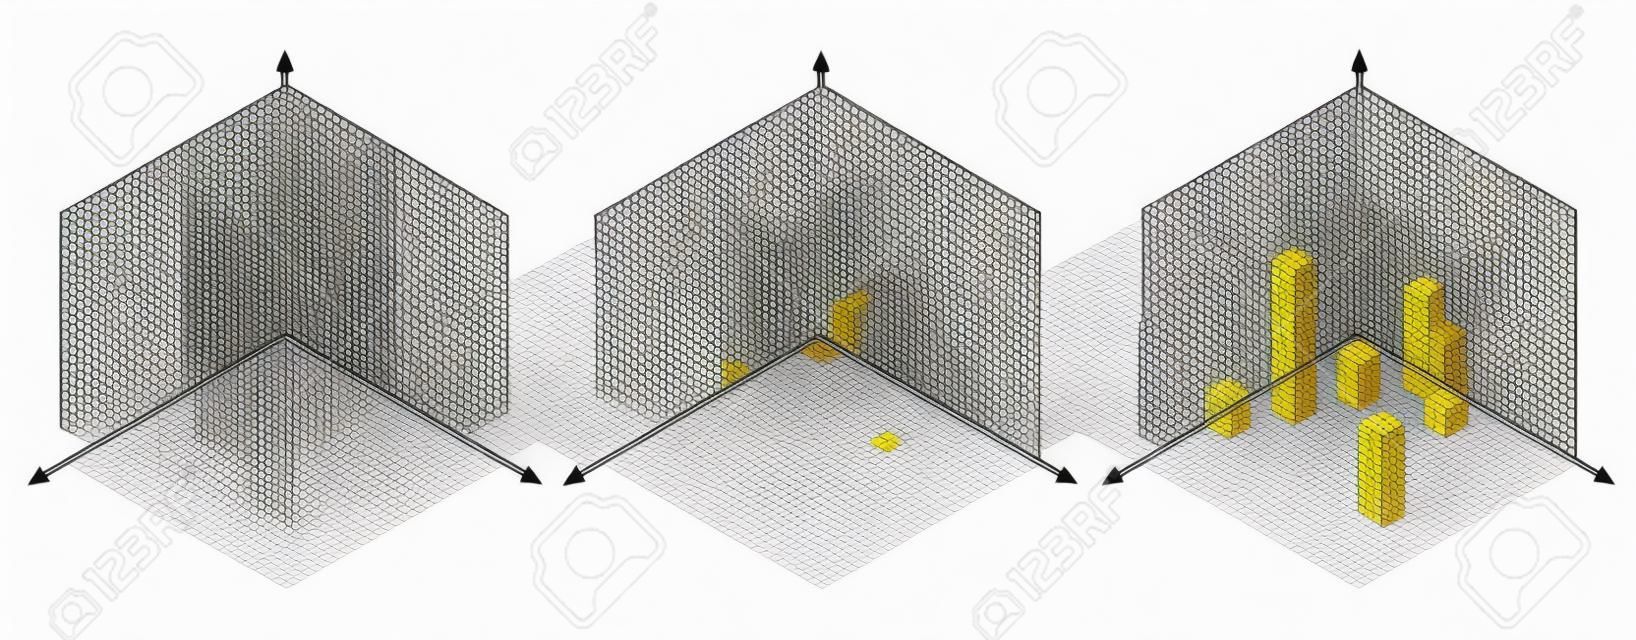 Изометрический рисунок на тридцать градусов привязан к его сторонам. Куб напротив. Изометрическая сетка